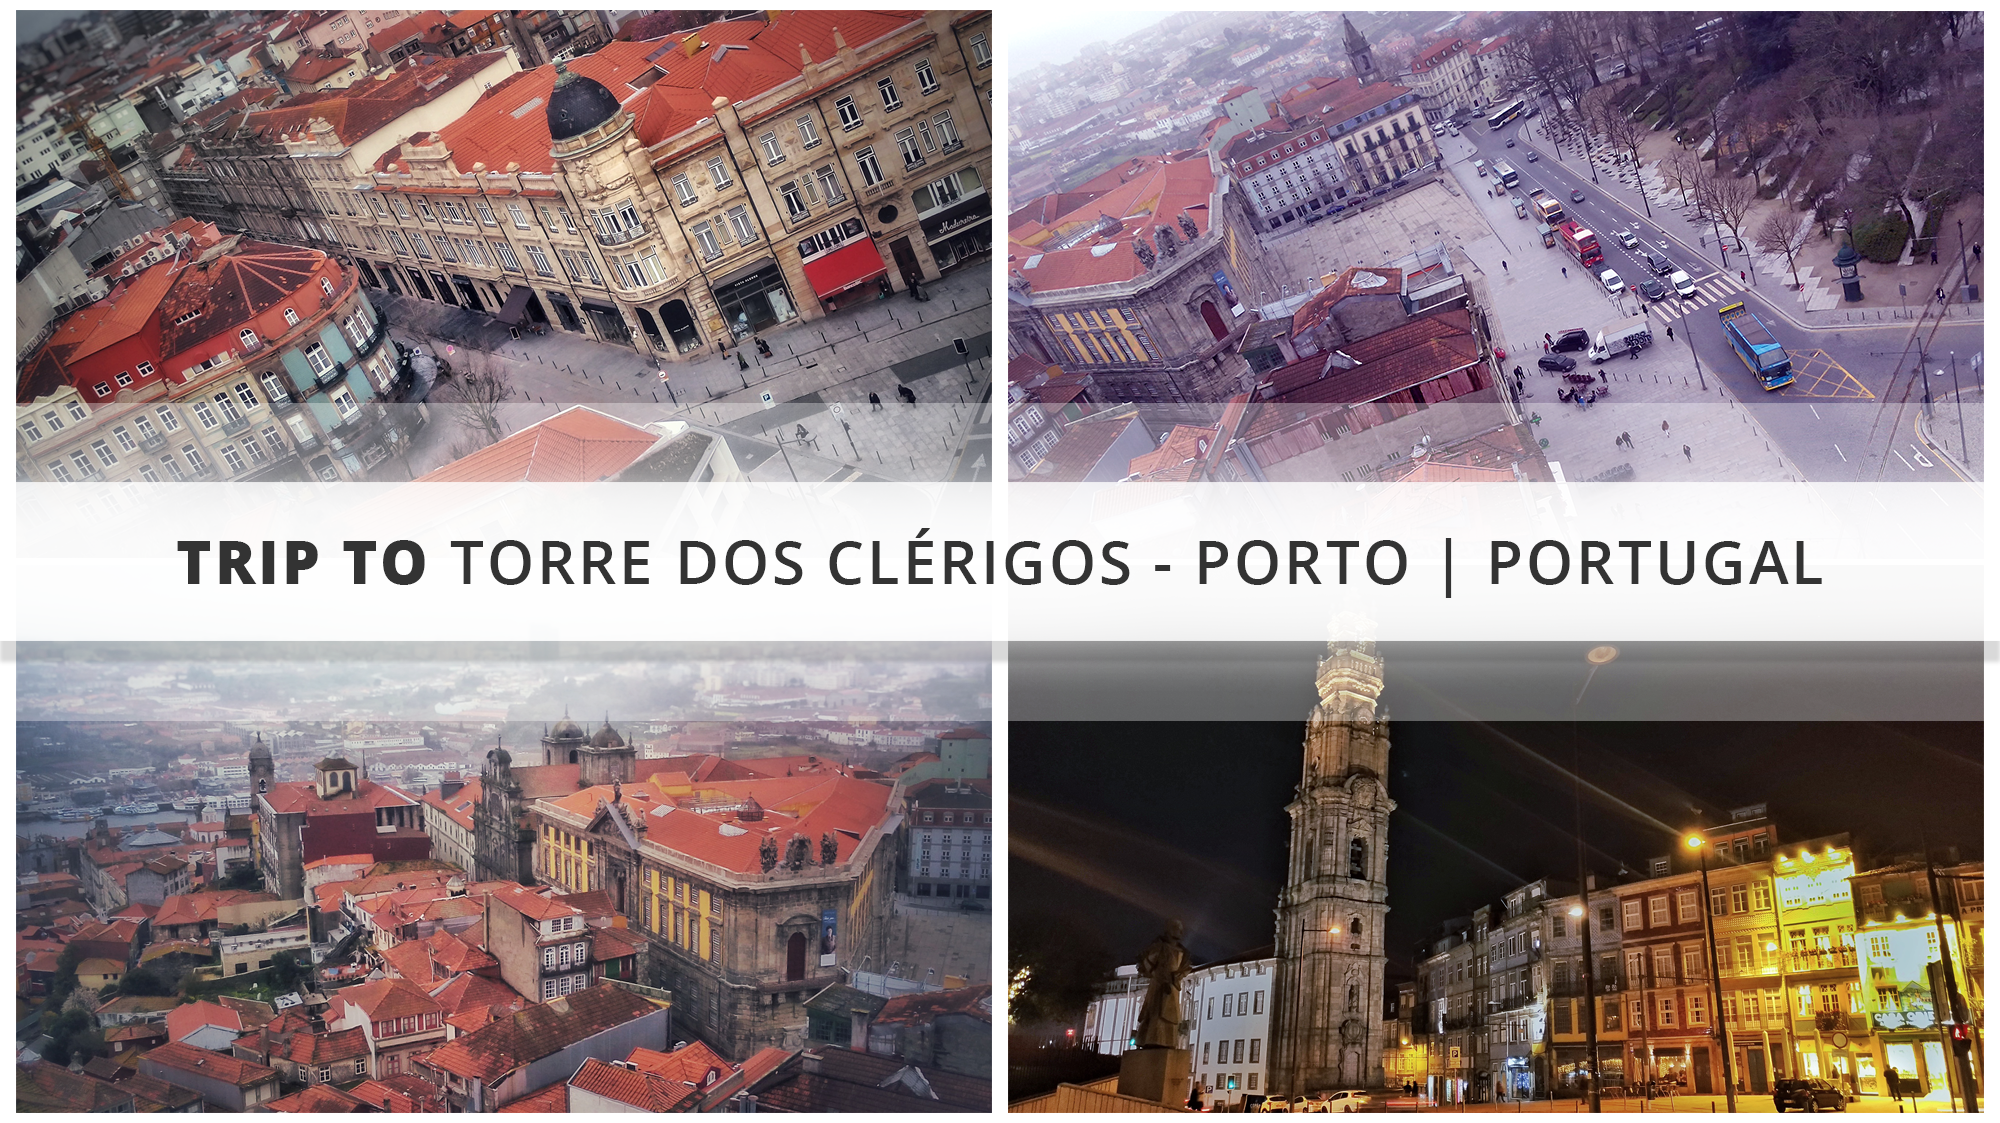 Trip to Torre dos Clérigos - Porto | Portugal